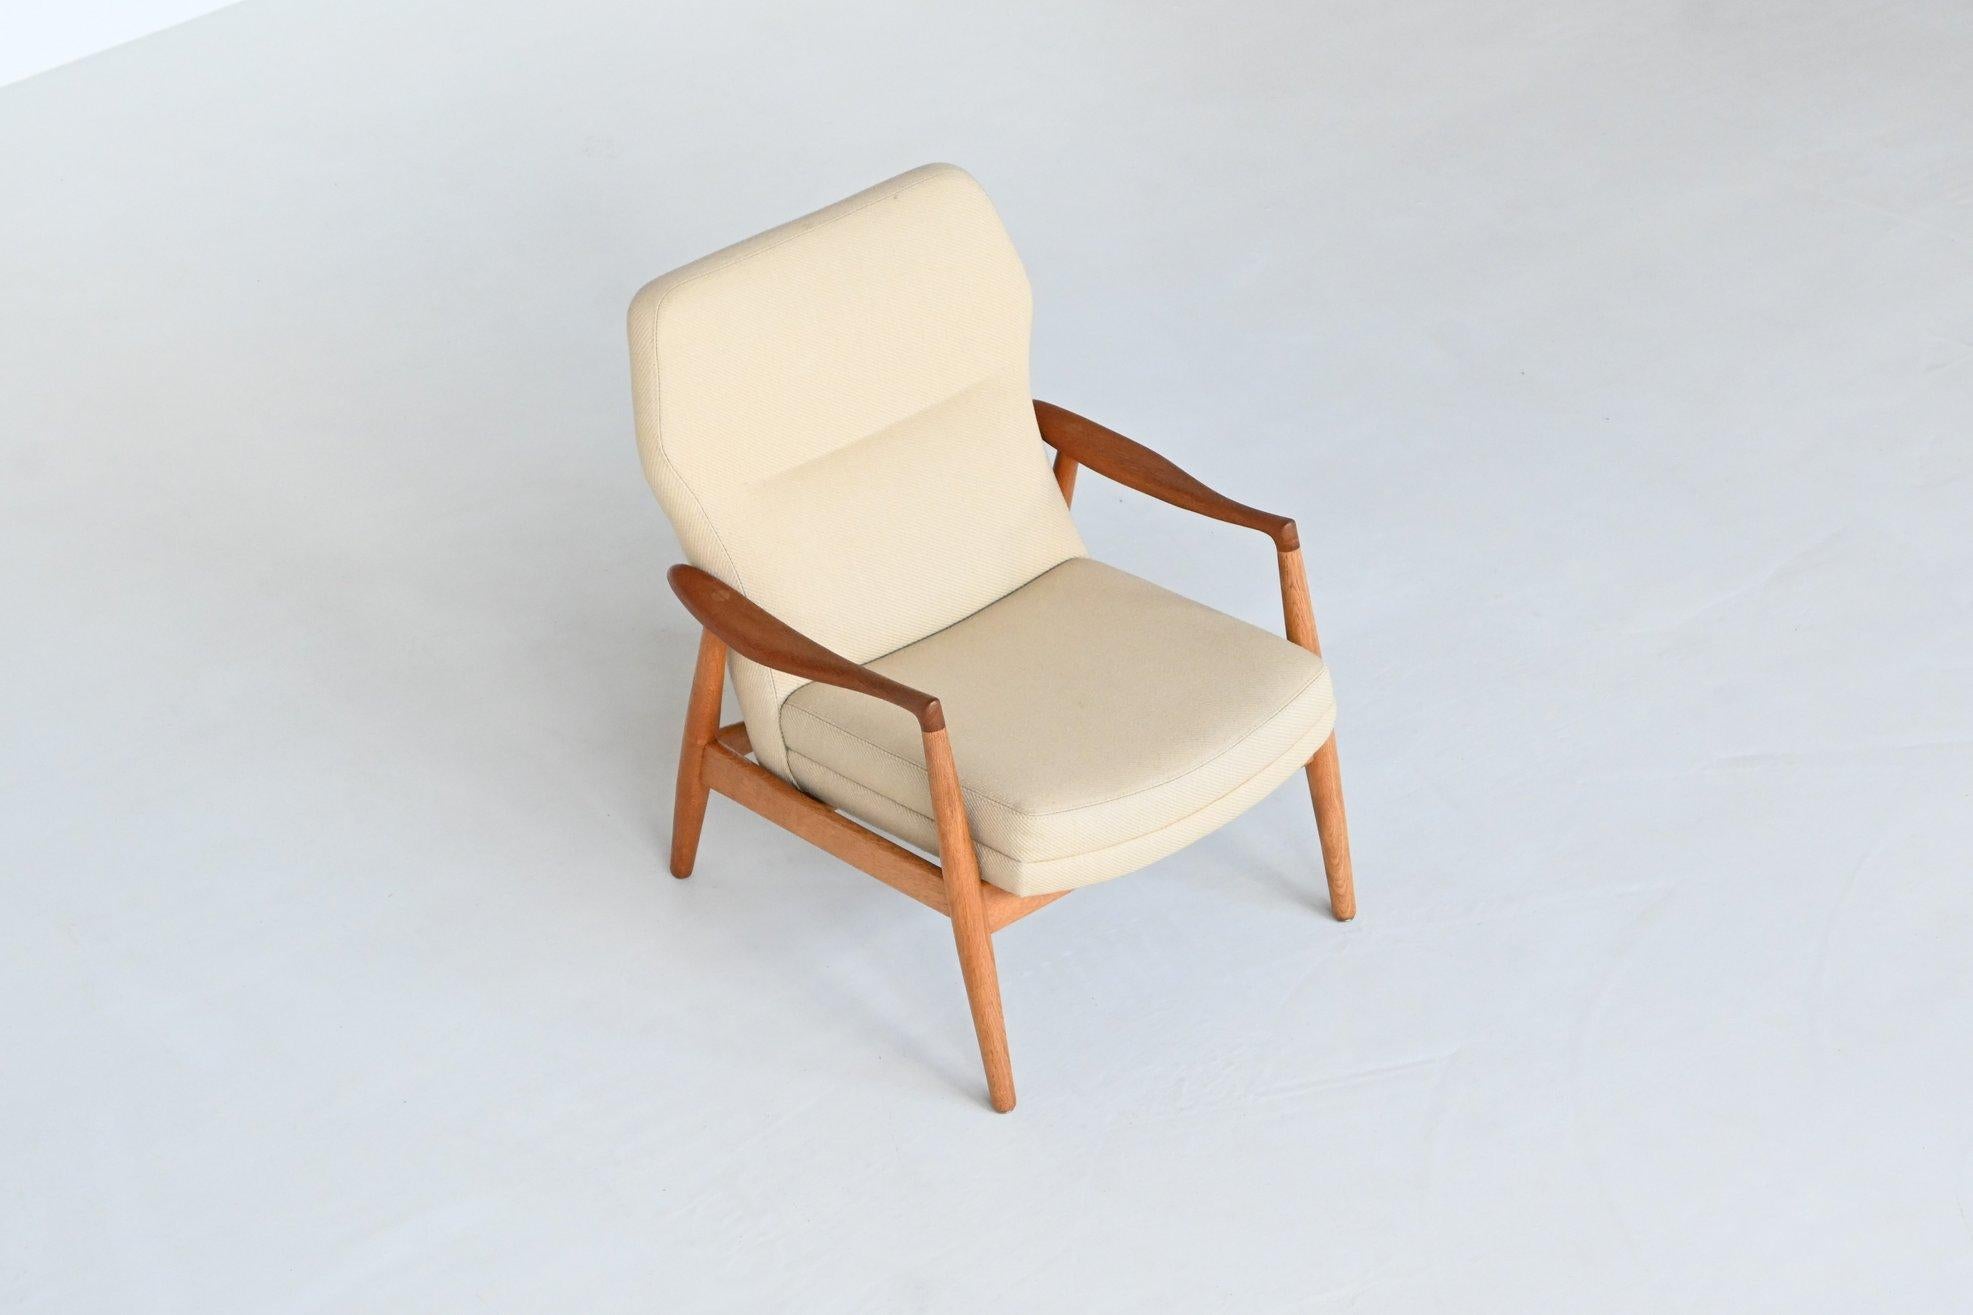 Magnifique chaise longue de forme modèle Mette conçue par les designers danois Arnold Madsen & Henry Schubell et fabriquée par Bovenkamp, Pays-Bas 1960. Cette chaise à dossier bas pour dames est dotée d'un cadre en bois de chêne massif et